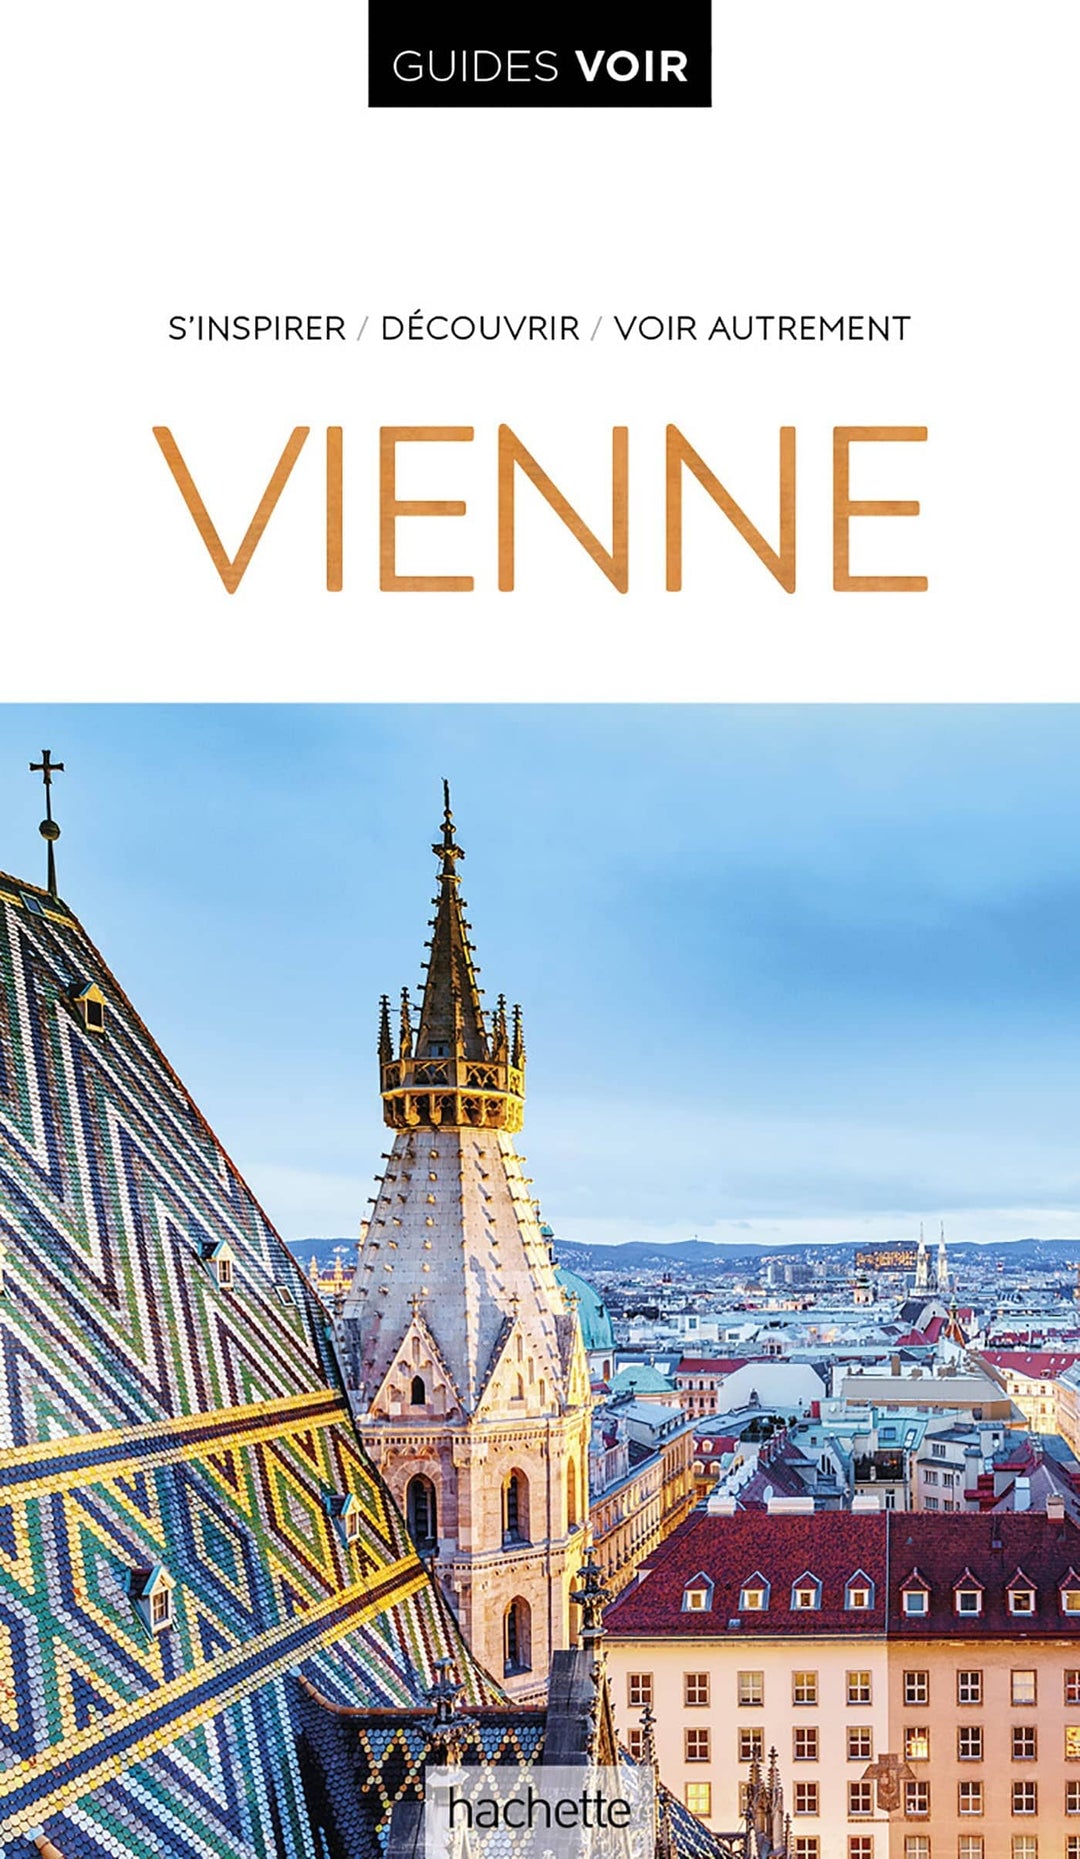 Guide de voyage - Vienne - Édition 2023 | Guides Voir guide de voyage Guides Voir 